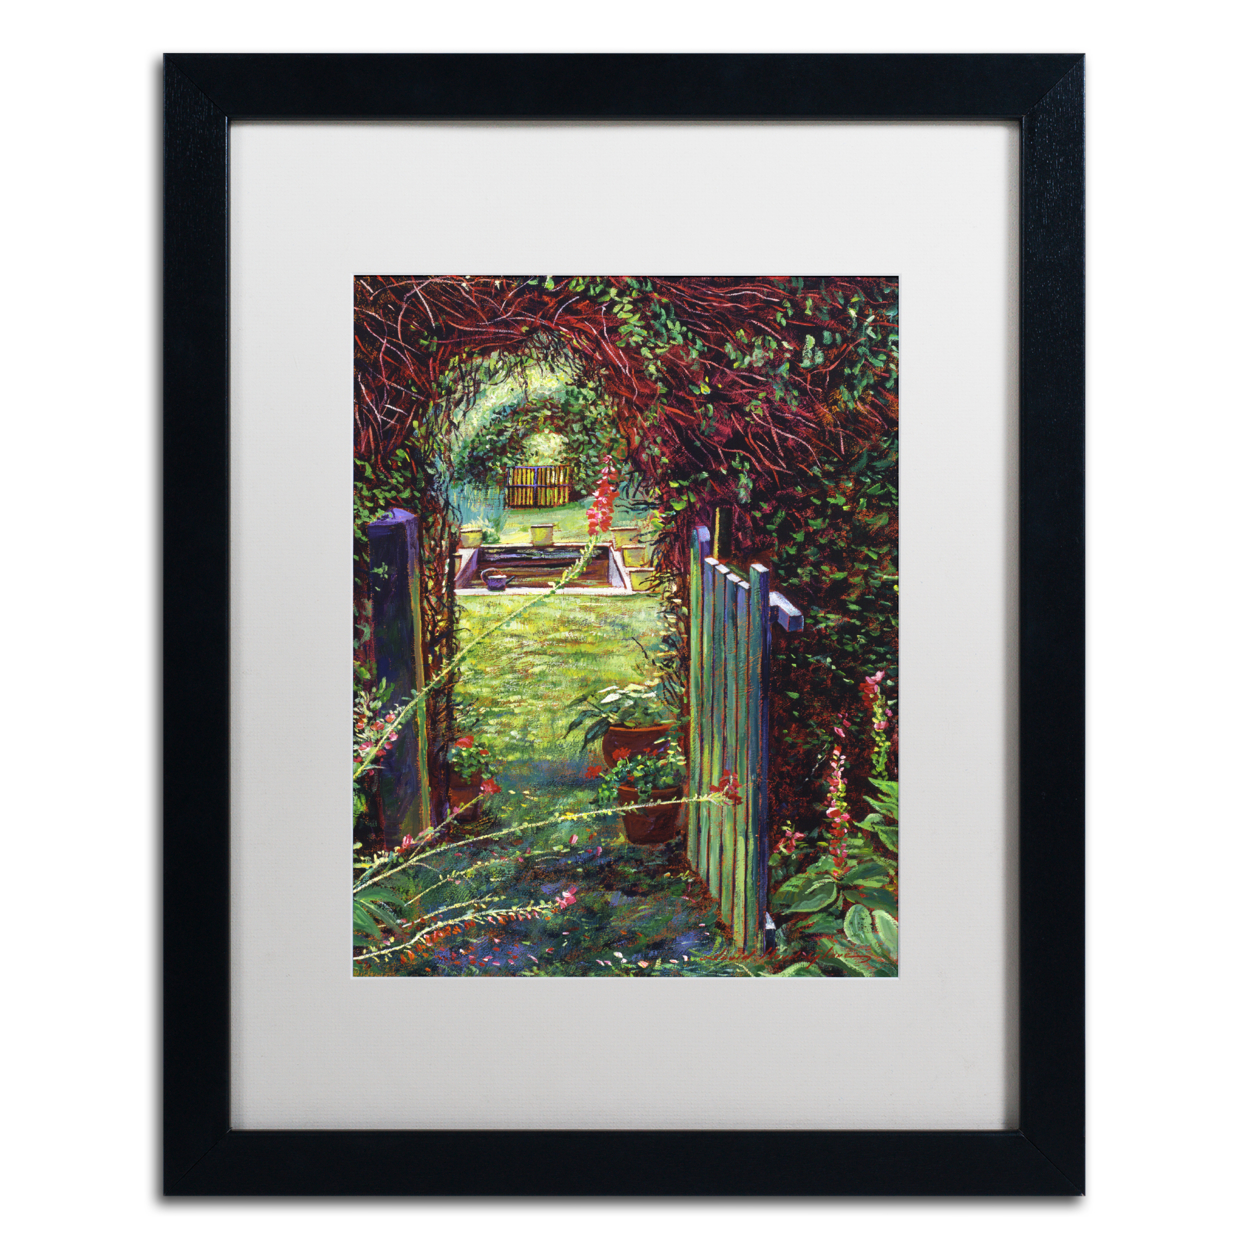 David Lloyd Glover 'Wicket Garden Gate' Black Wooden Framed Art 18 X 22 Inches